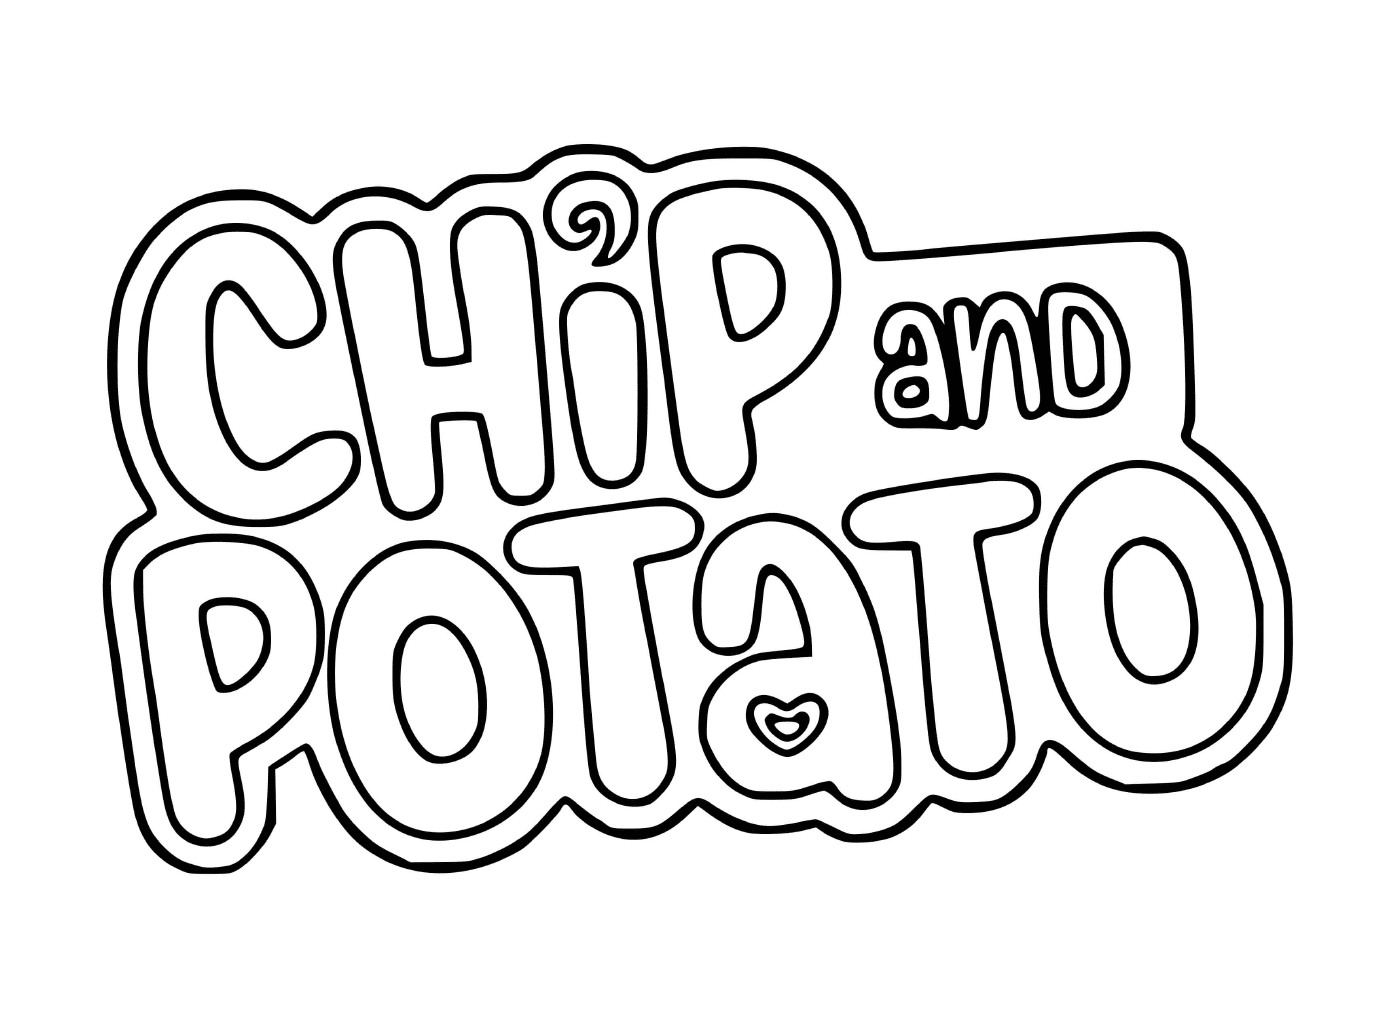  Чип и картофельный лого 